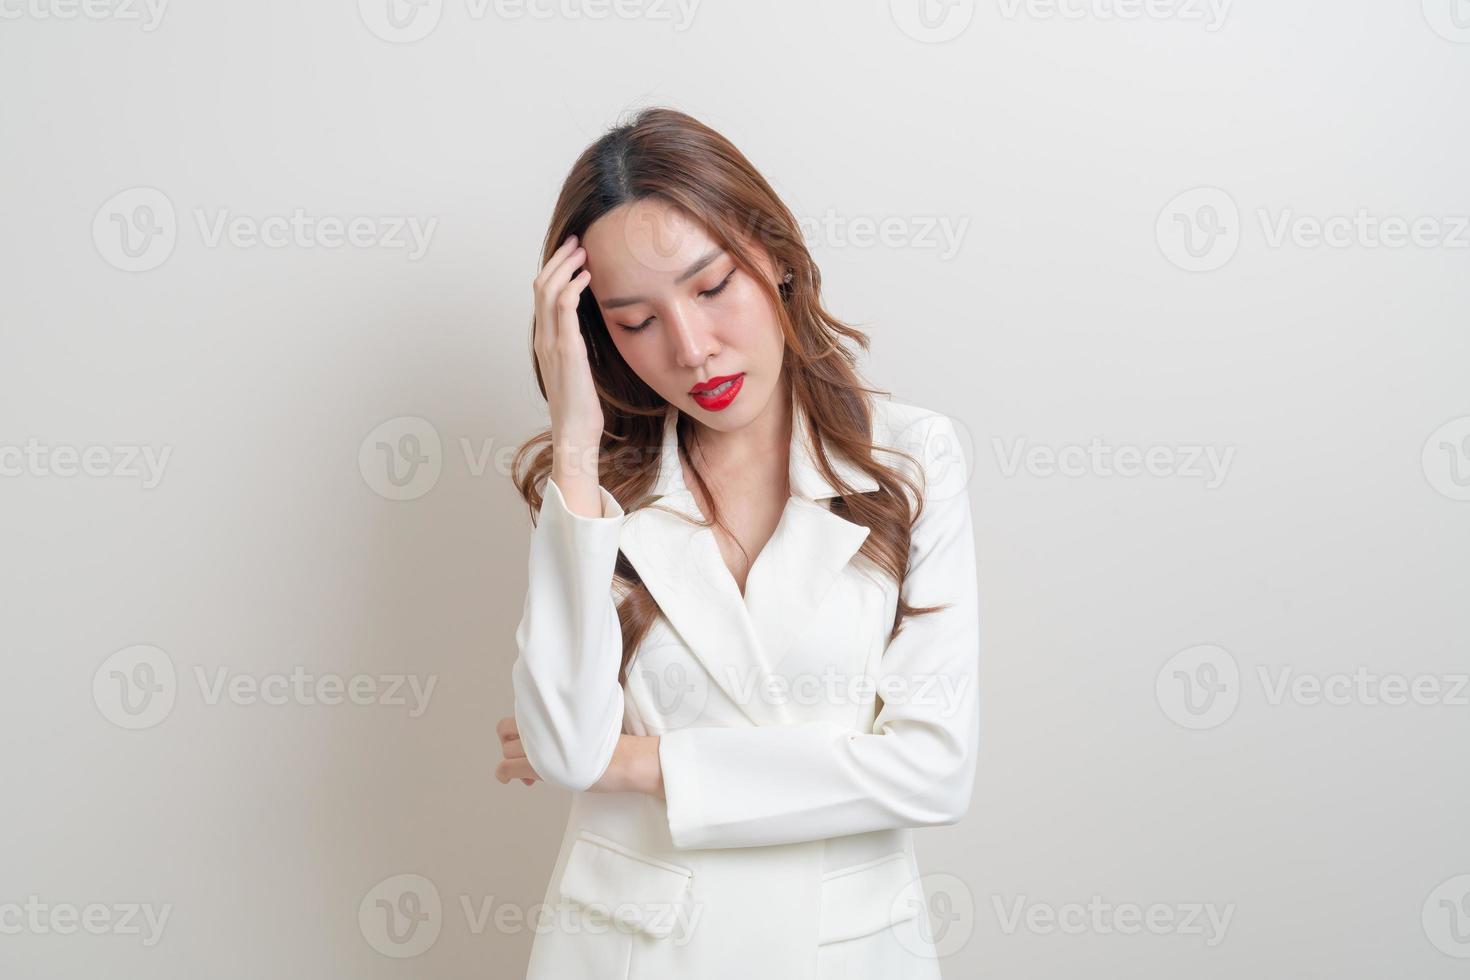 retrato linda mulher asiática com raiva, estresse, preocupação ou reclamação sobre fundo branco foto